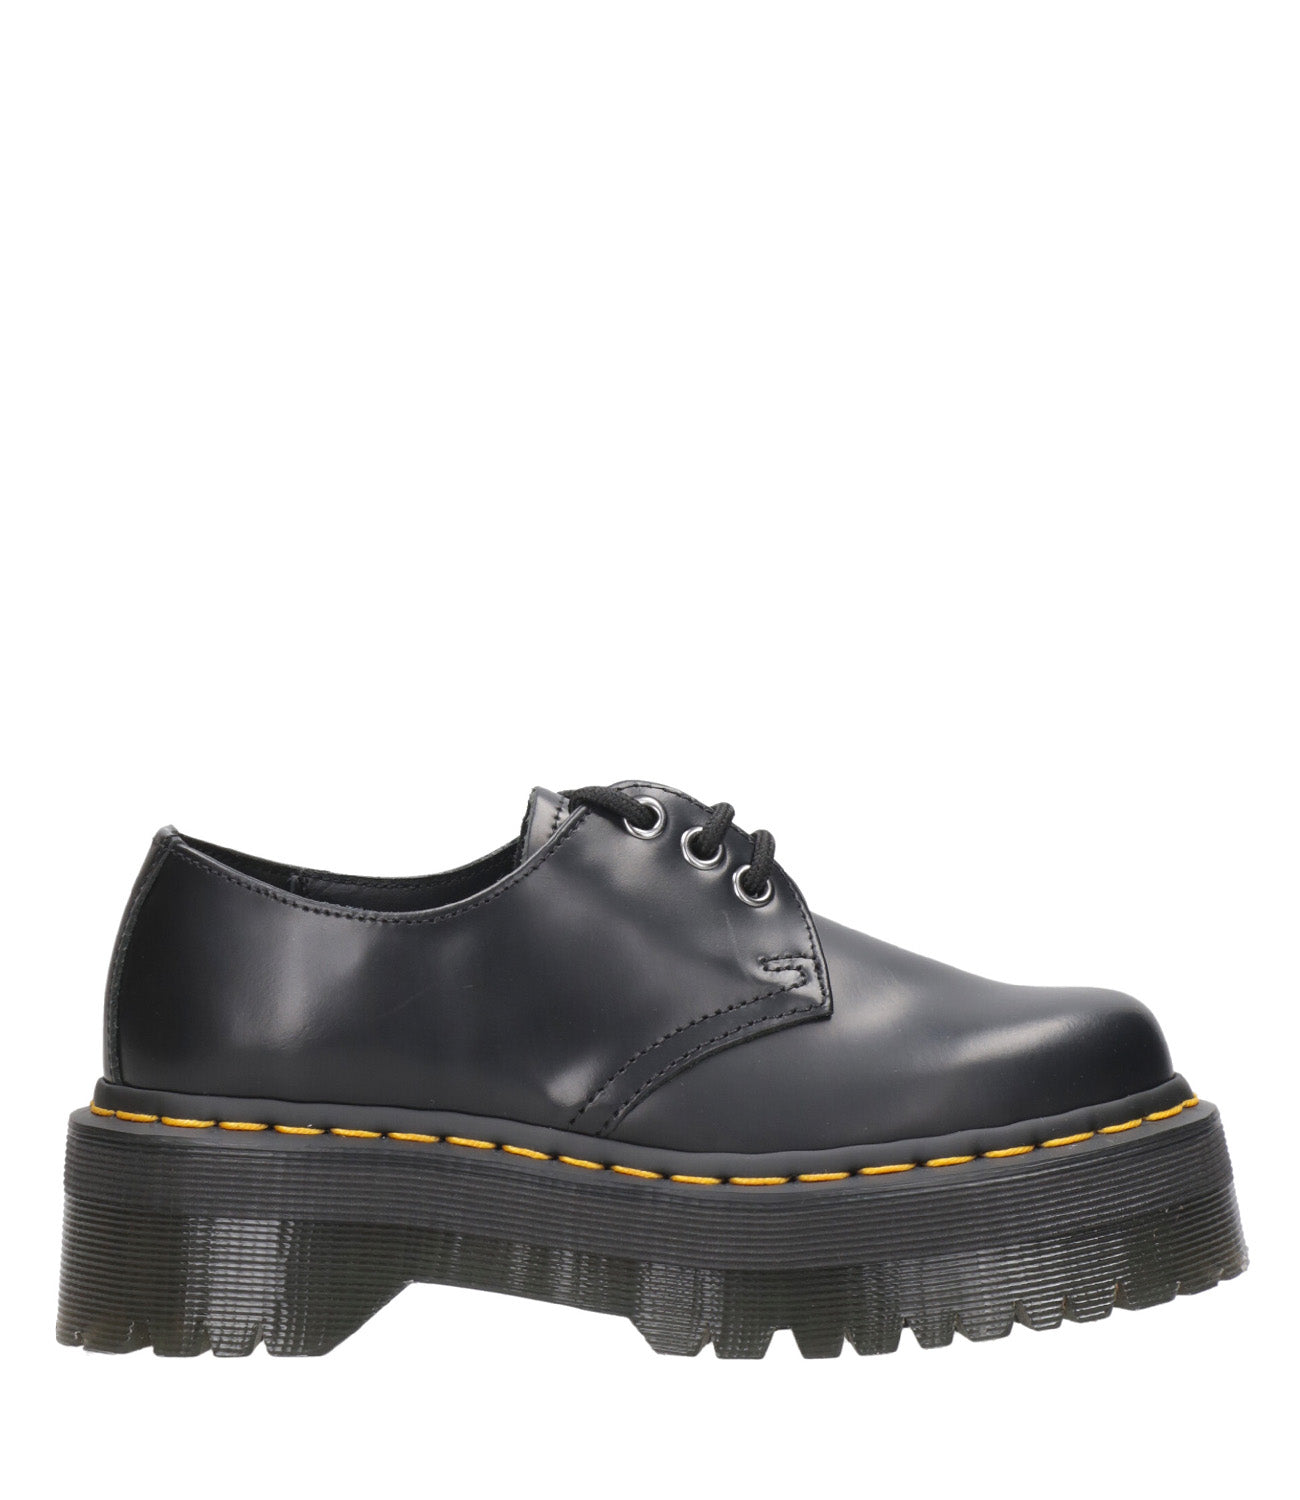 Dr Martens | Shoe 1461 Quad Black